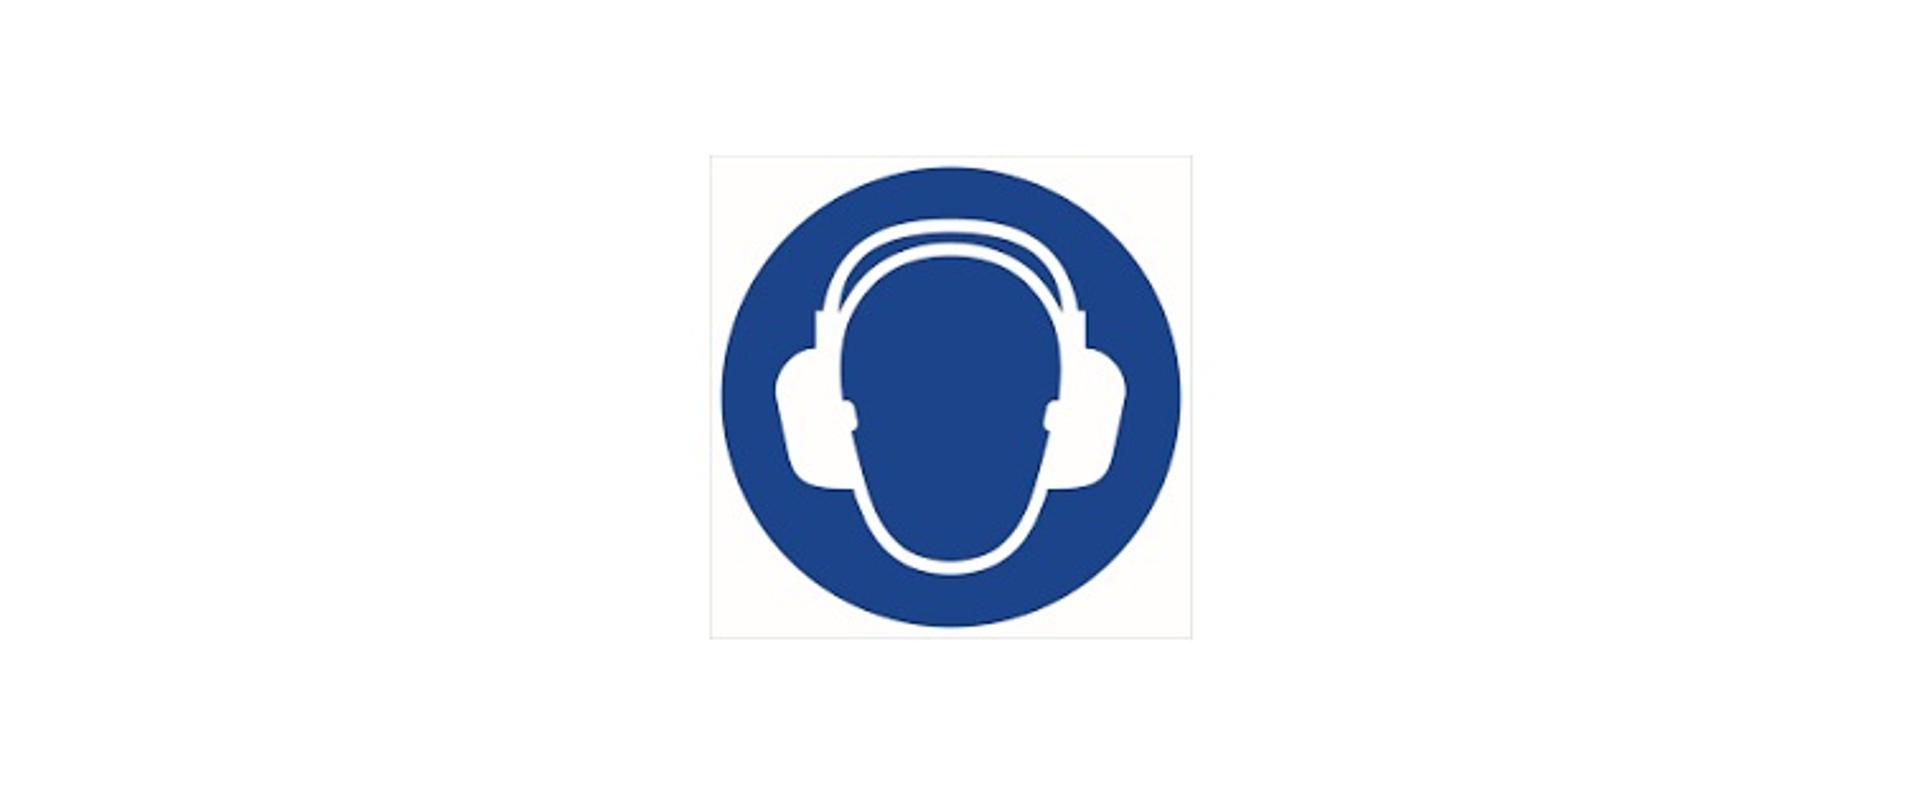 Grafika przedstawia ciemnoniebieski okrąg, wewnątrz którego znajduje się narysowany białą linią szkic głowy człowieka z założonymi na uszy słuchawkami ochronnymi. 